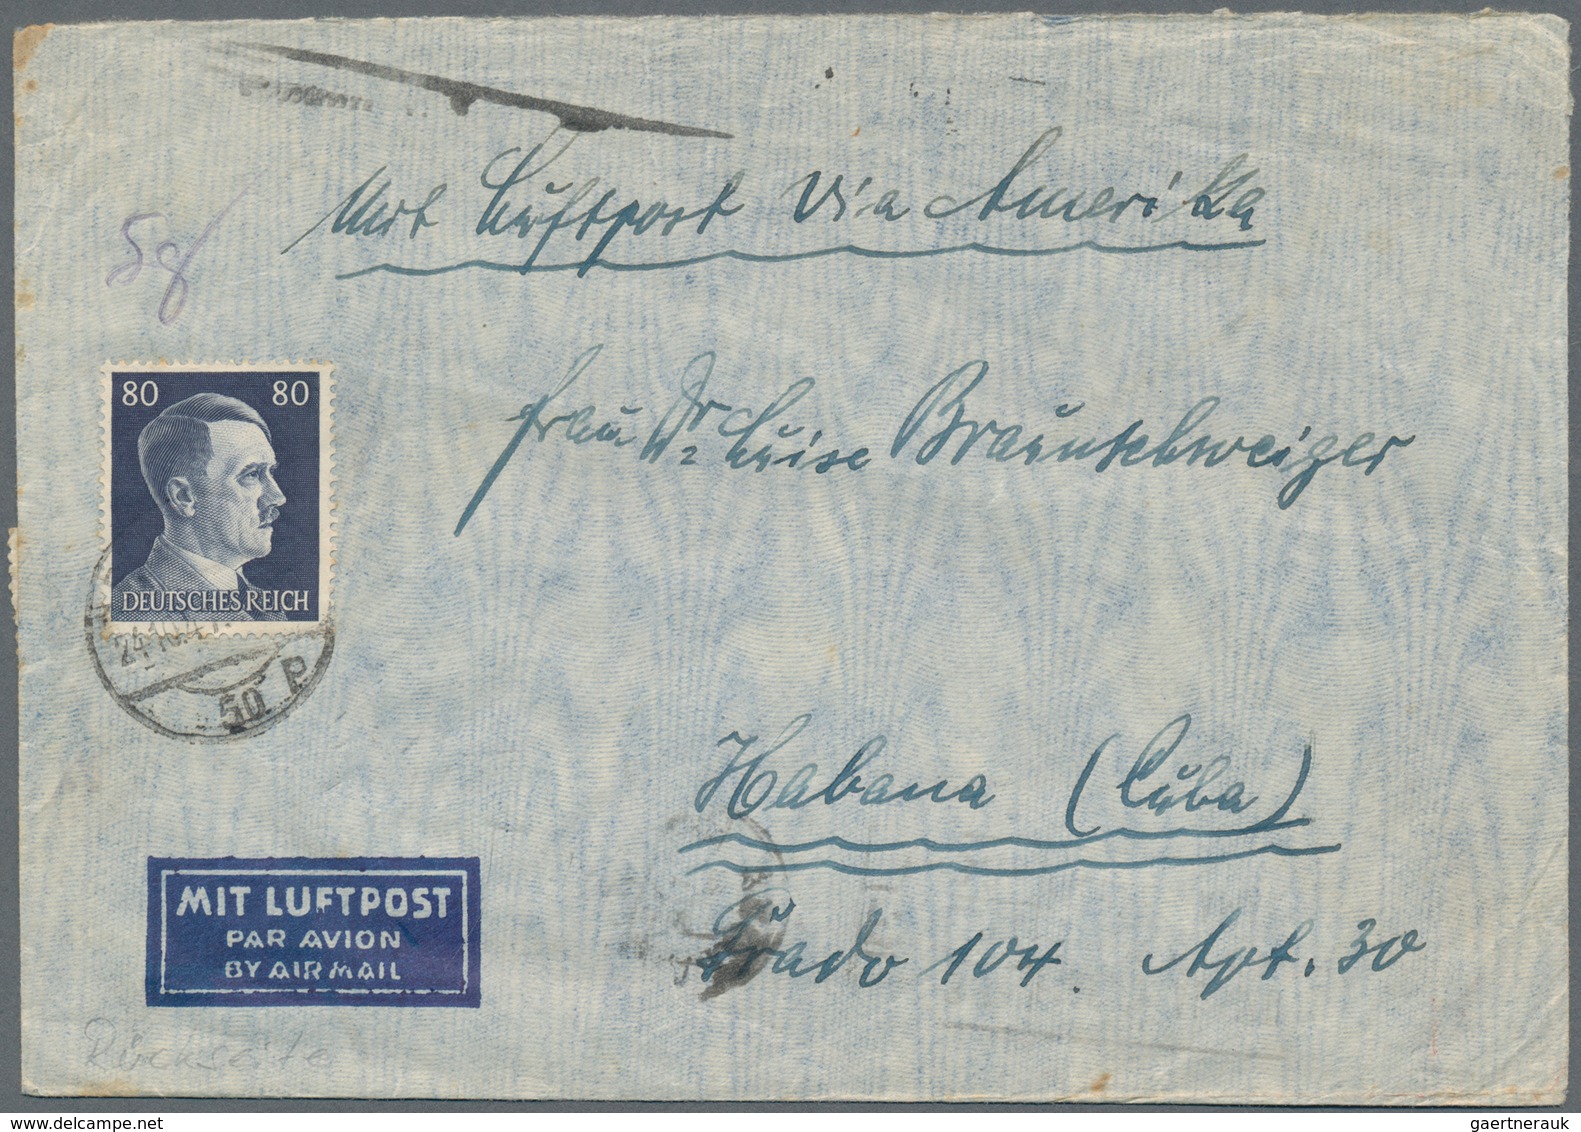 Deutsches Reich - 3. Reich: 1933/1945, sehr reichhaltige Sammlung mit ca.500 Belegen in drei Ringbin